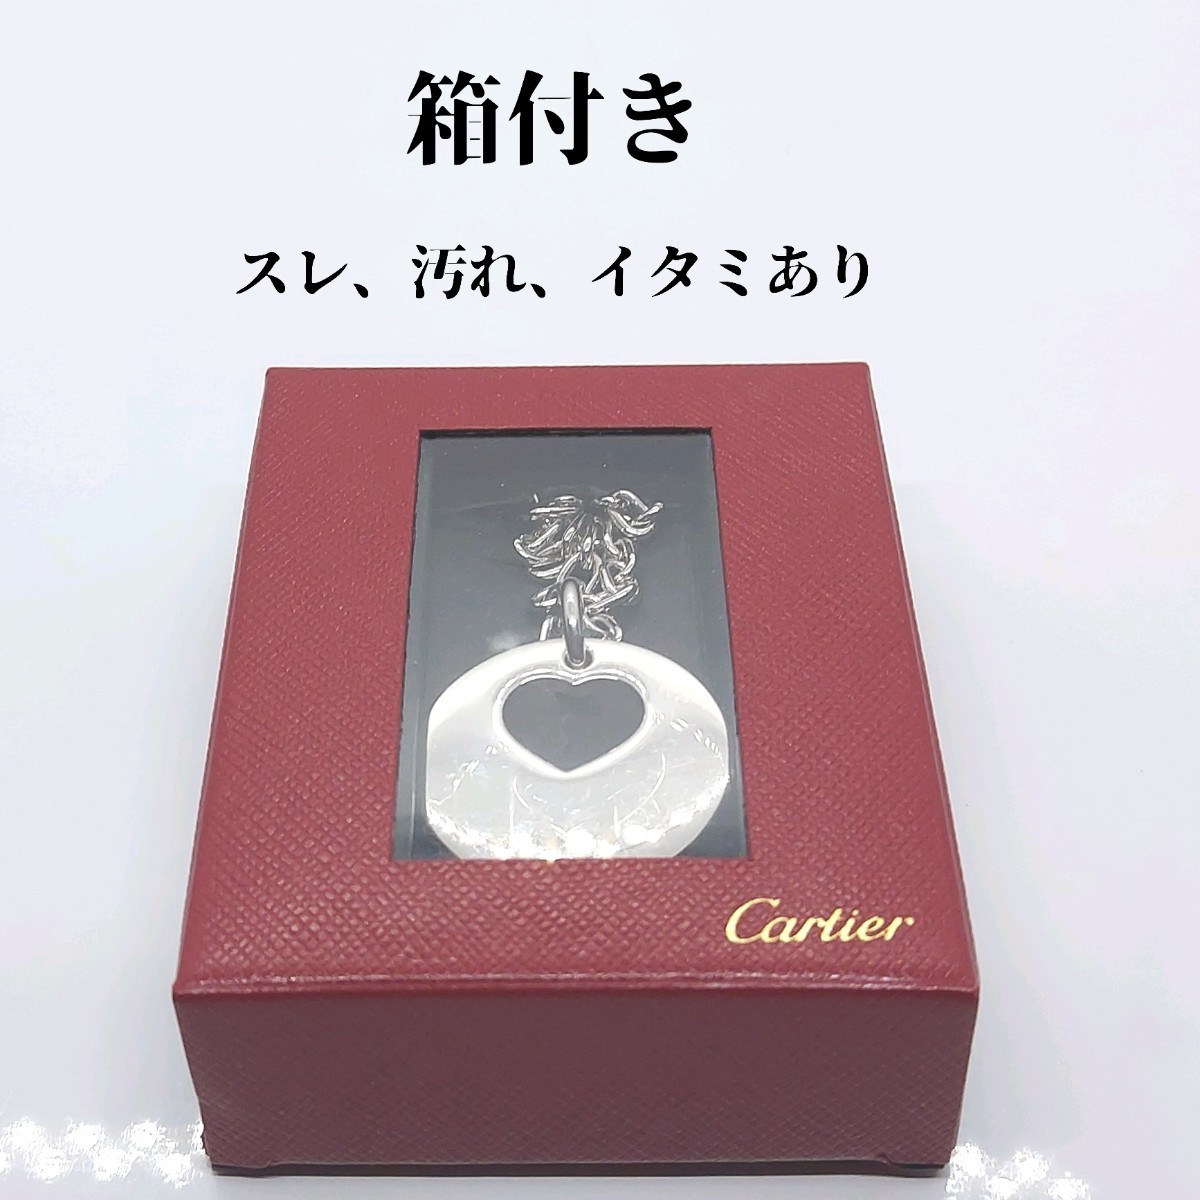  box attaching Cartier Cartier heart motif key holder charm 